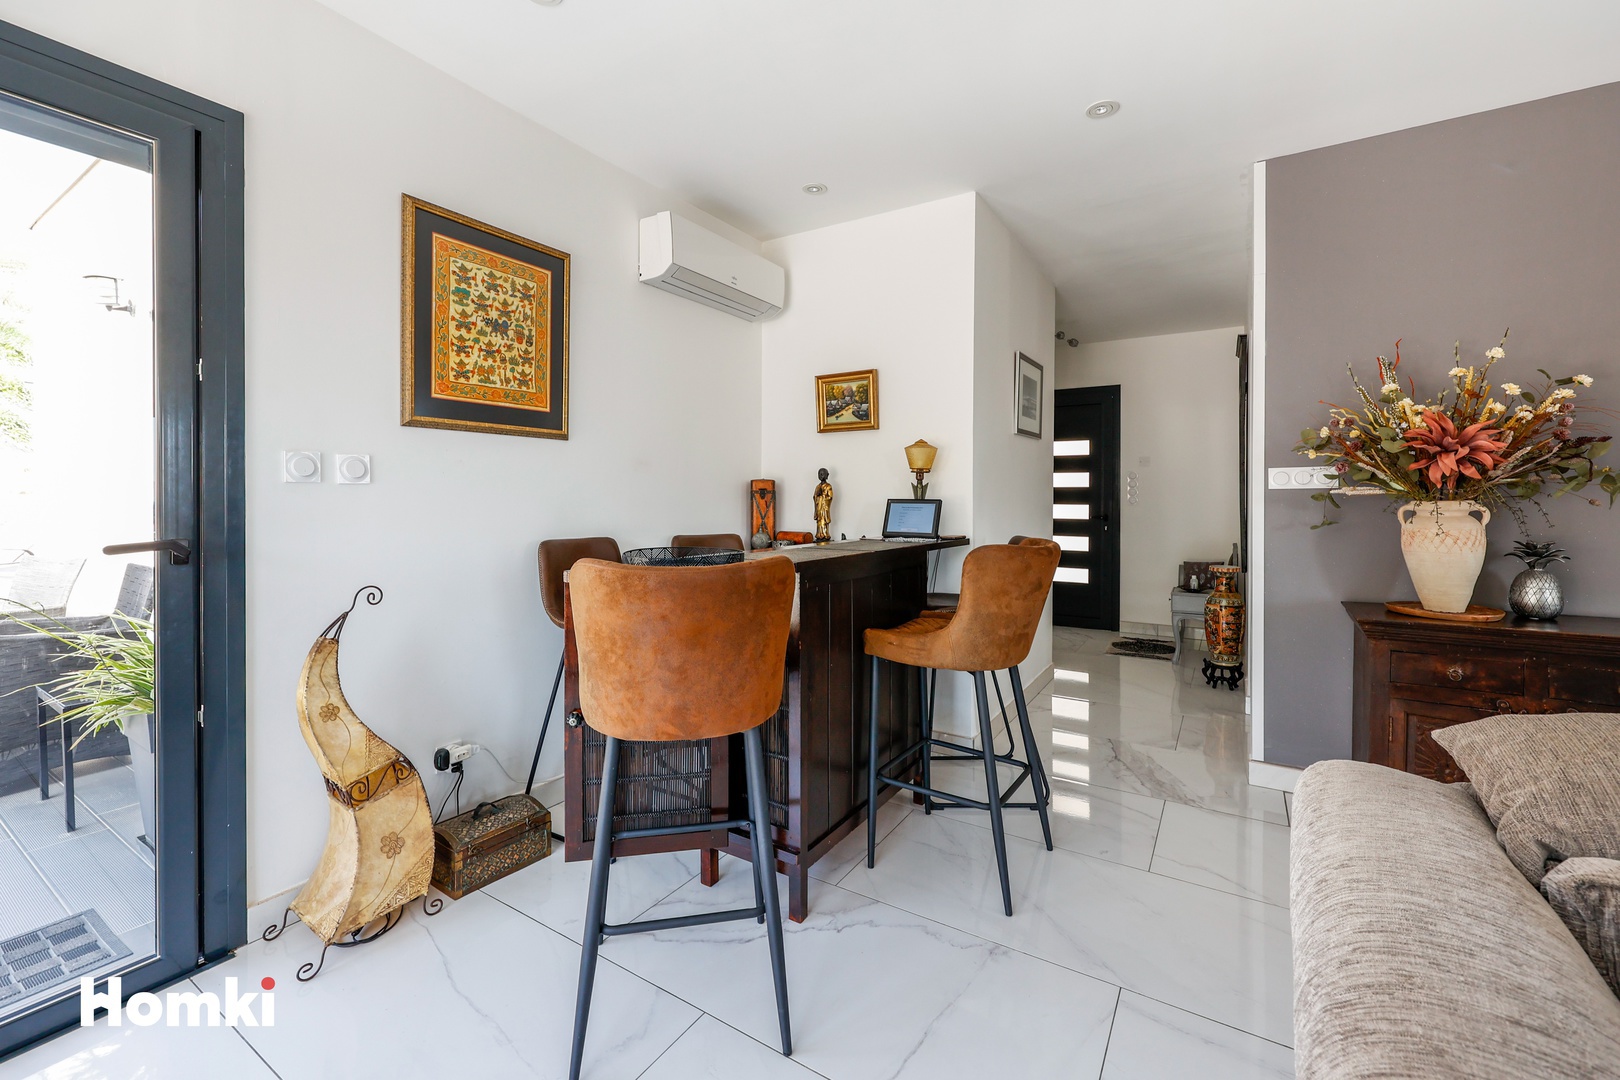 Homki - Vente Maison/villa  de 128.0 m² à Narbonne 11100